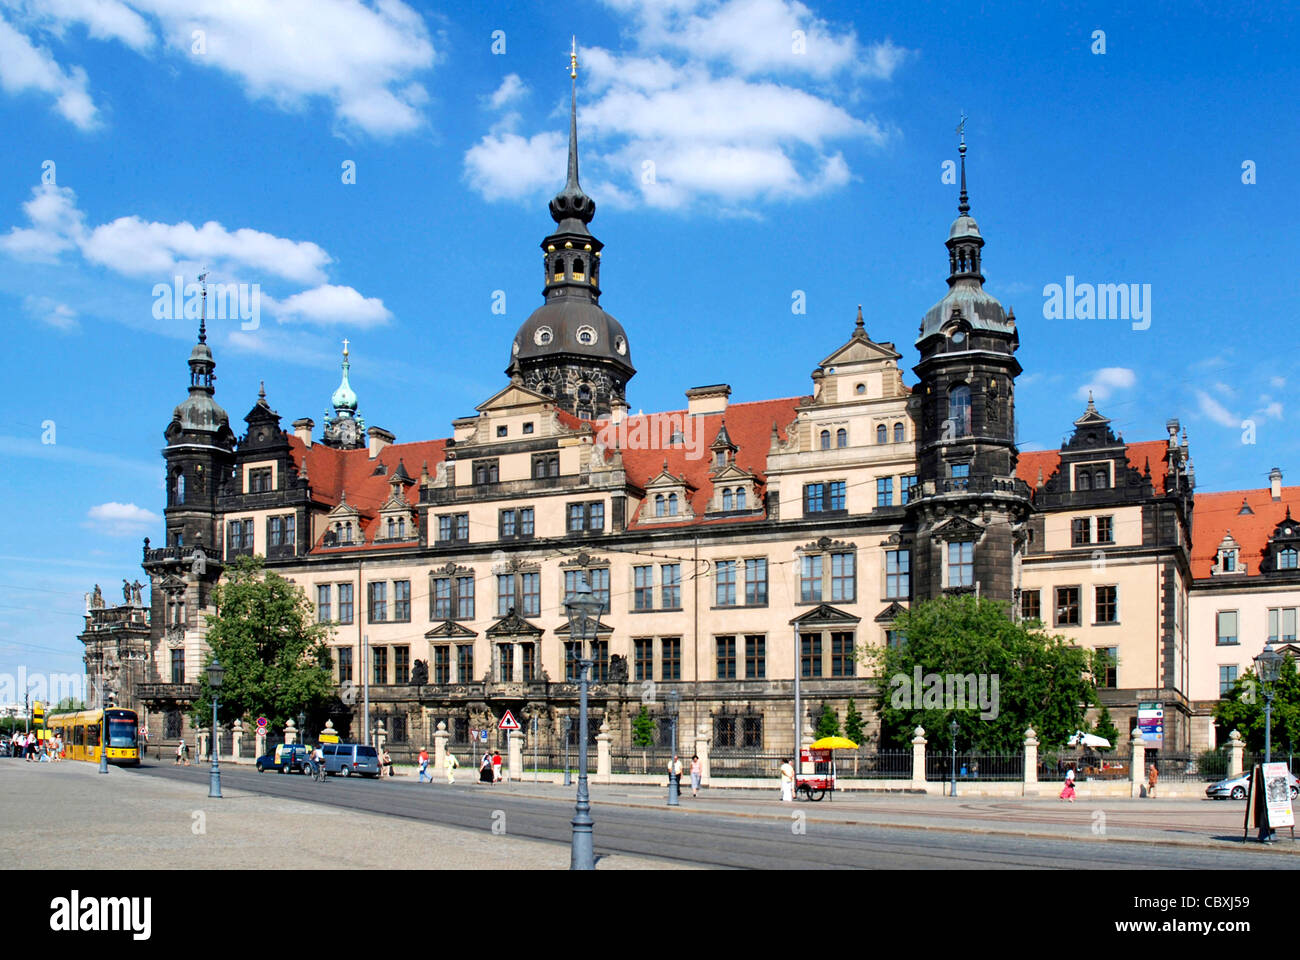 Residence castle in Dresden. Stock Photo